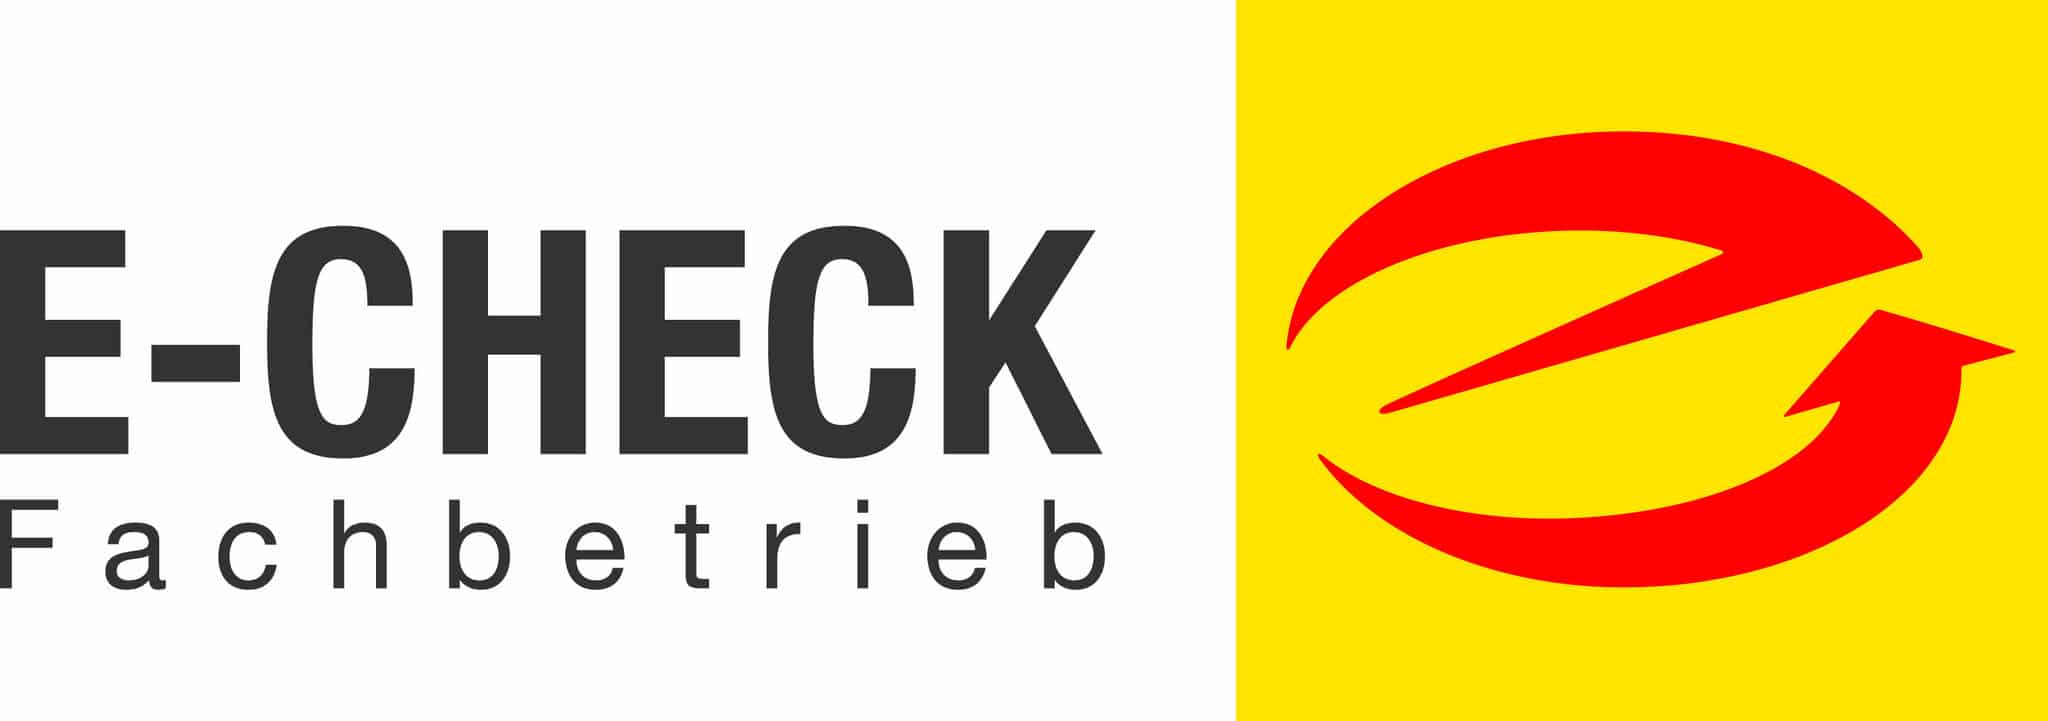 E-Check Fachbetrieb ist E+Service+Check GmbH